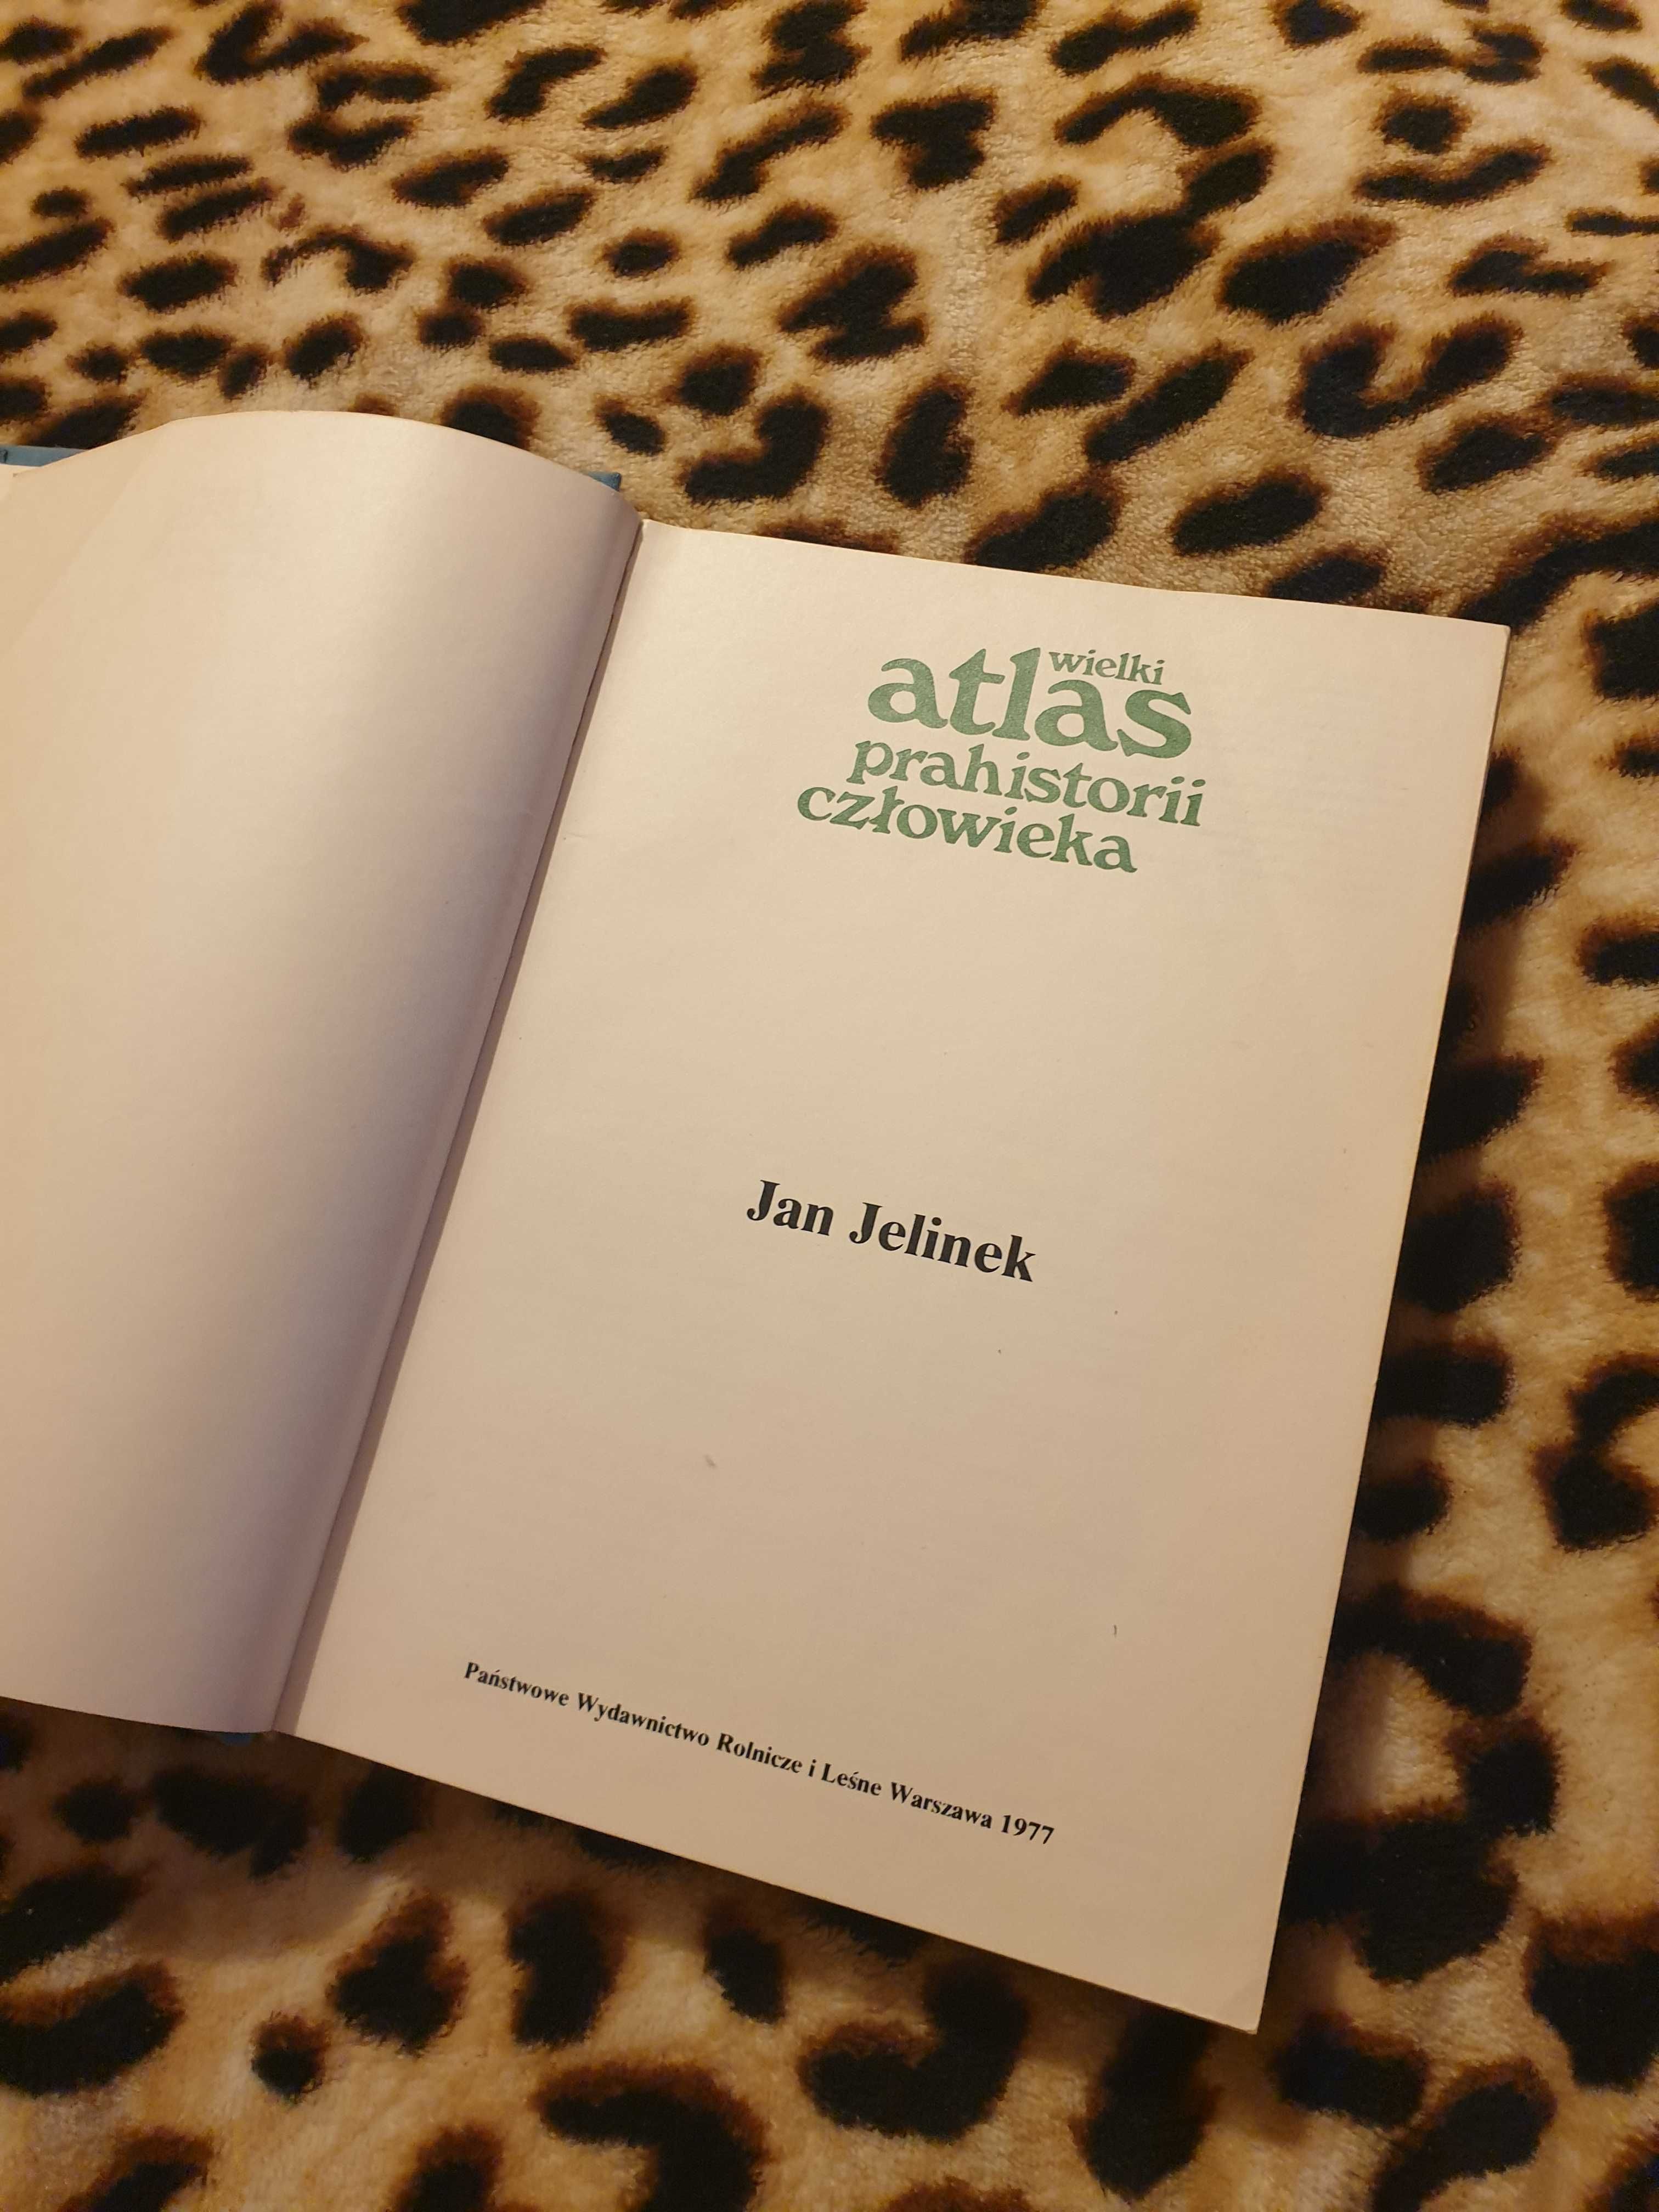 Wielki Atlas prehistorii człowieka 1977 jan kielinek wydawnictwo rolni